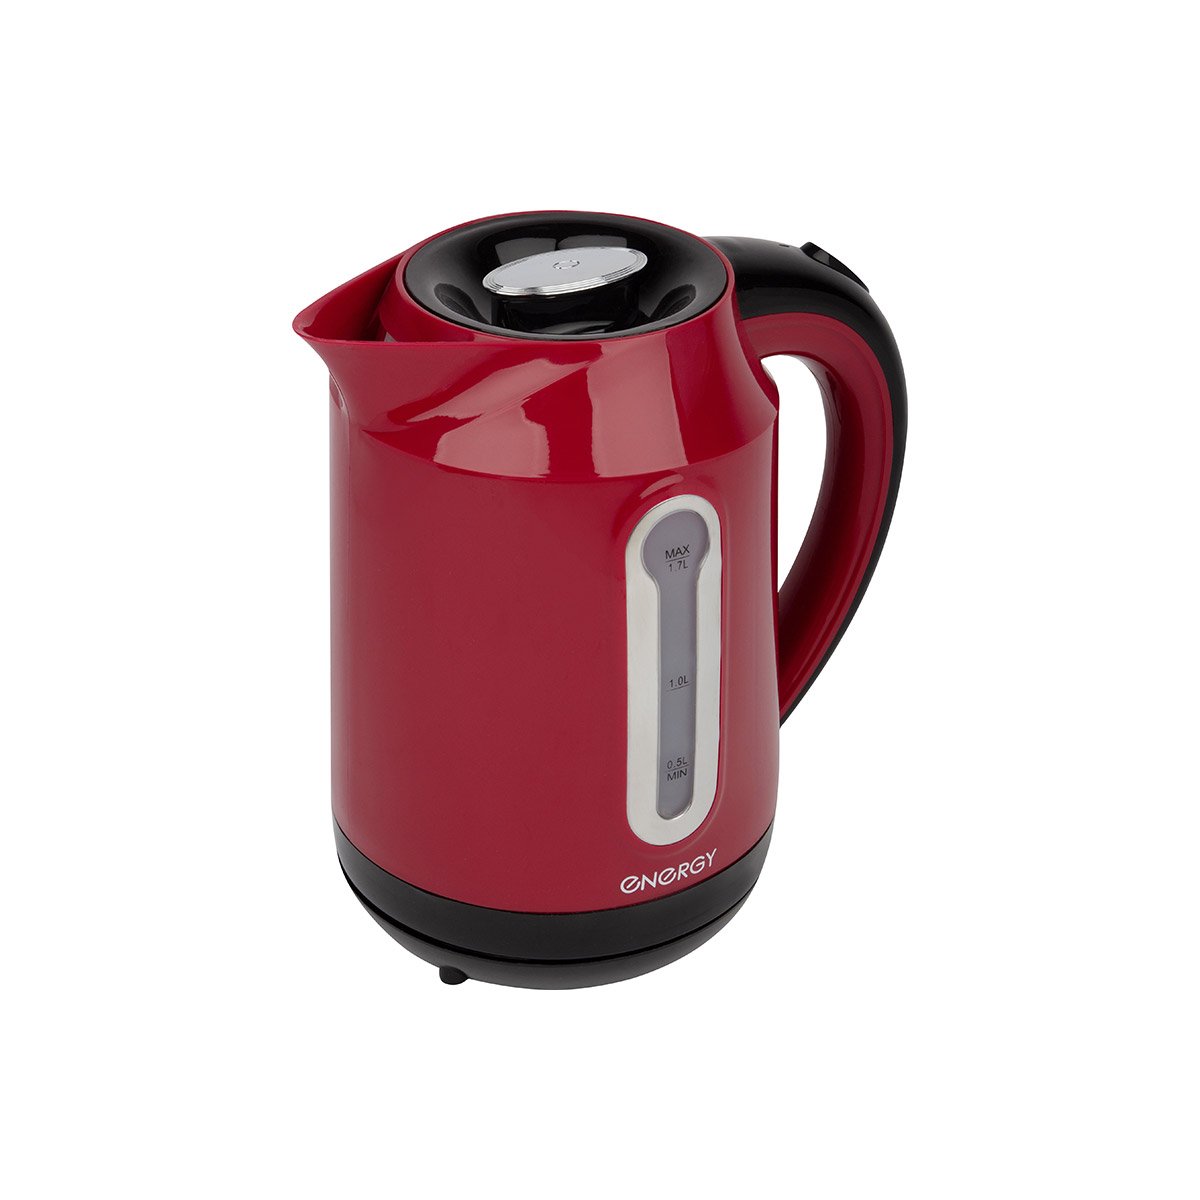 Energy E-210 чайник электрический дисковый, 1.7л, 2200Вт, пластиковый, шкала уровня воды, красныйКупить